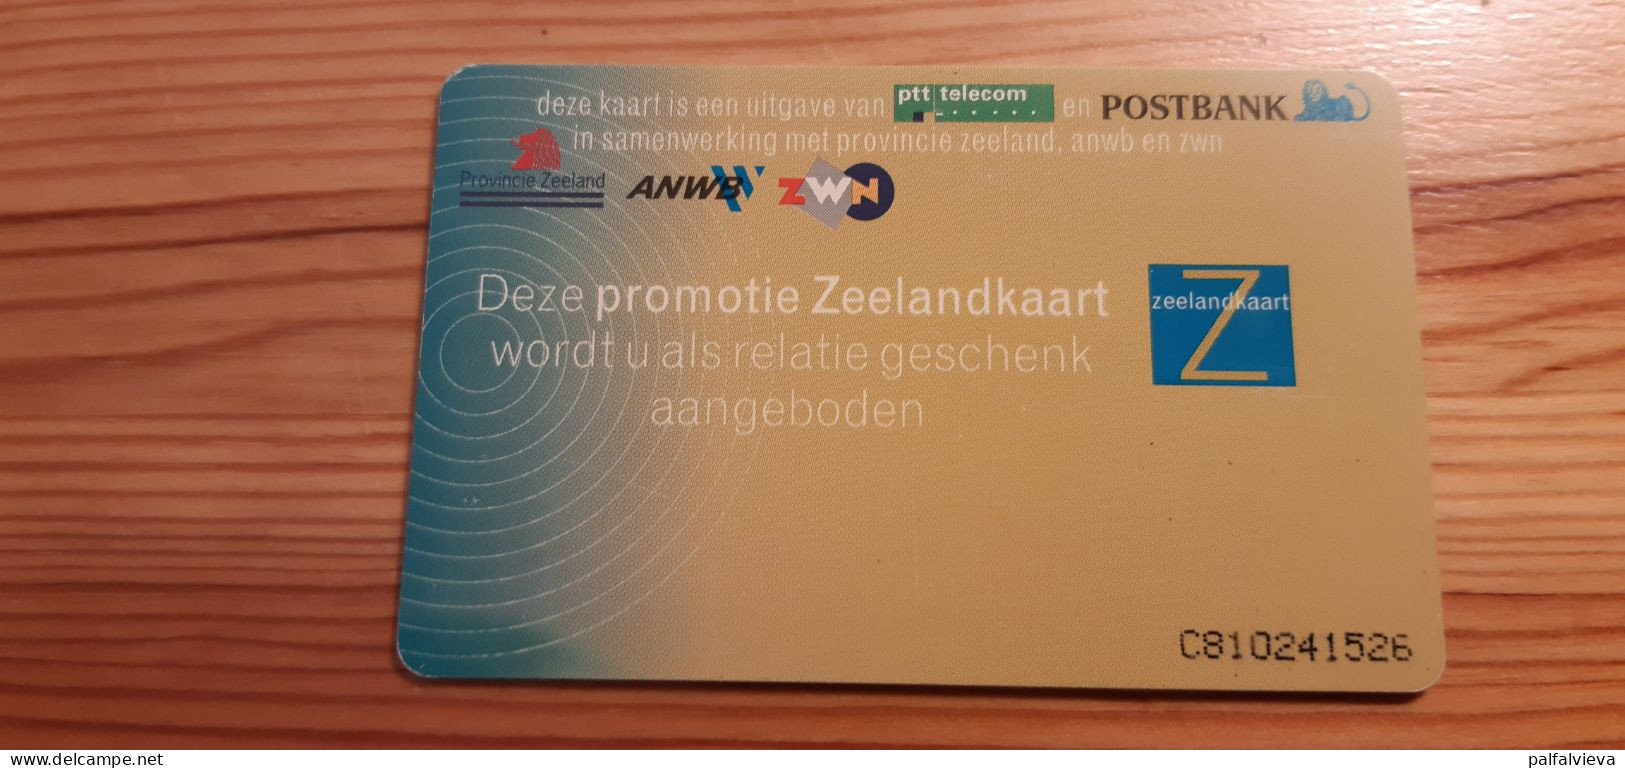 Phonecard Netherlands - Zeelandkaart - öffentlich